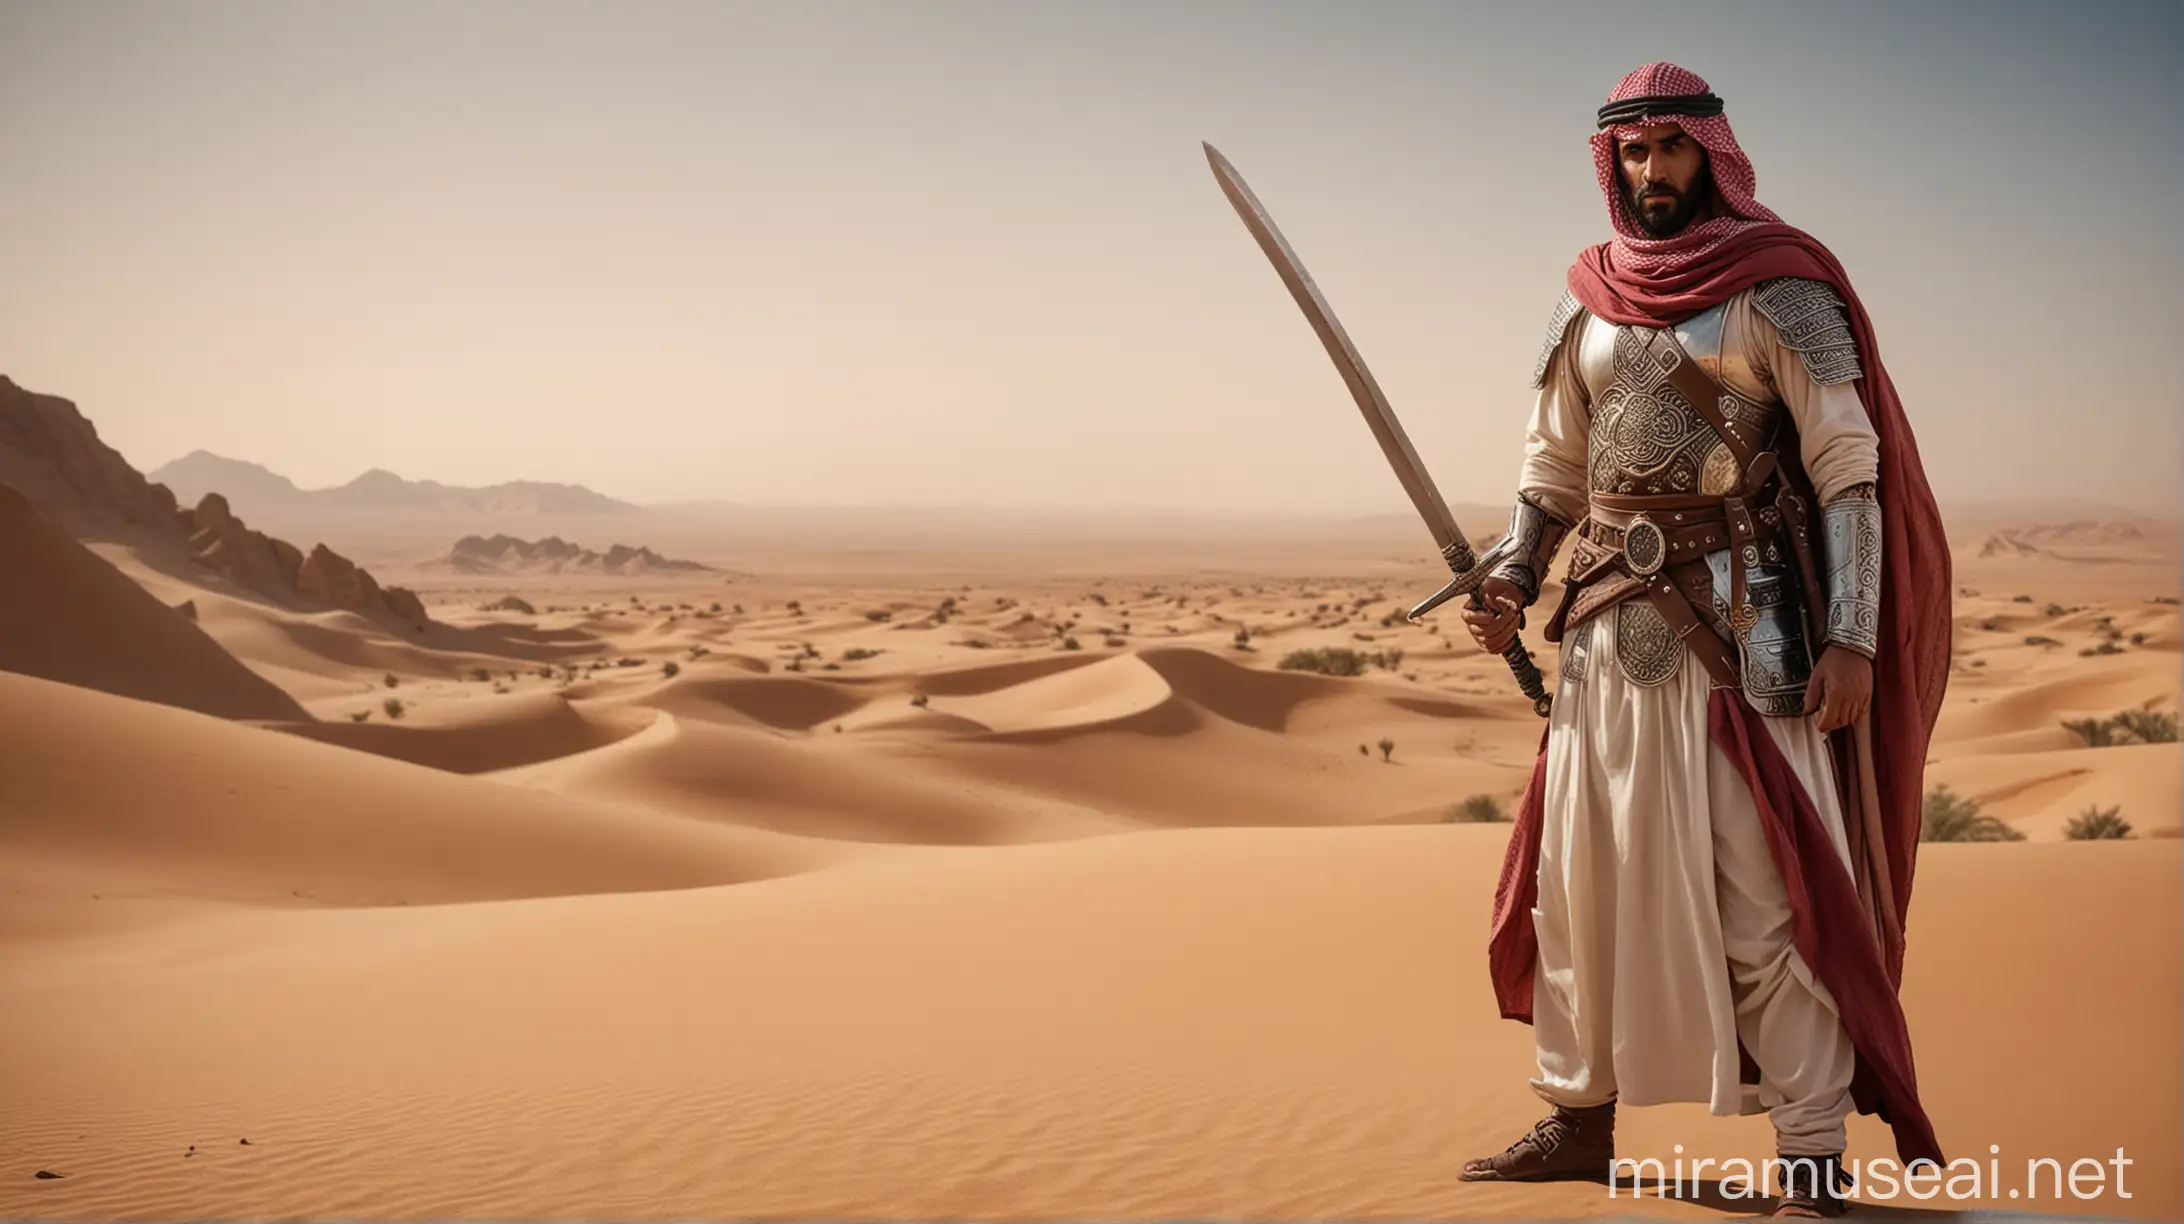 Arabian Knight with Sword in Desert Landscape